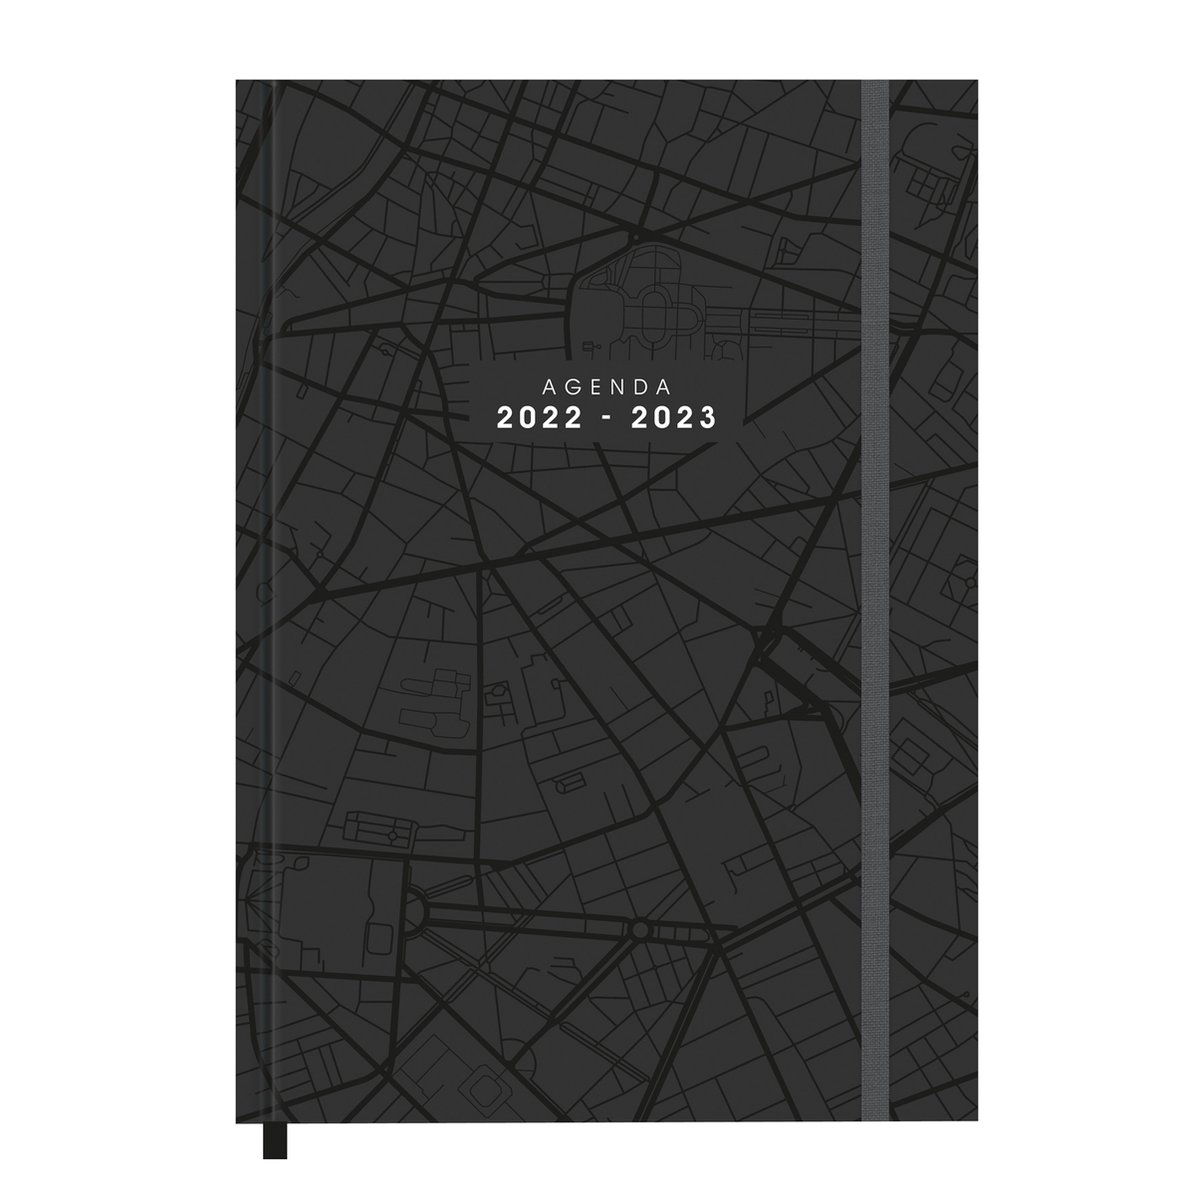 Hobbit - Agenda/planner - 2022/2023 - Donkergrijs/zwart landkaart - Hardcover - Calendarium horizontaal - 30,5x21,5cm(A4)